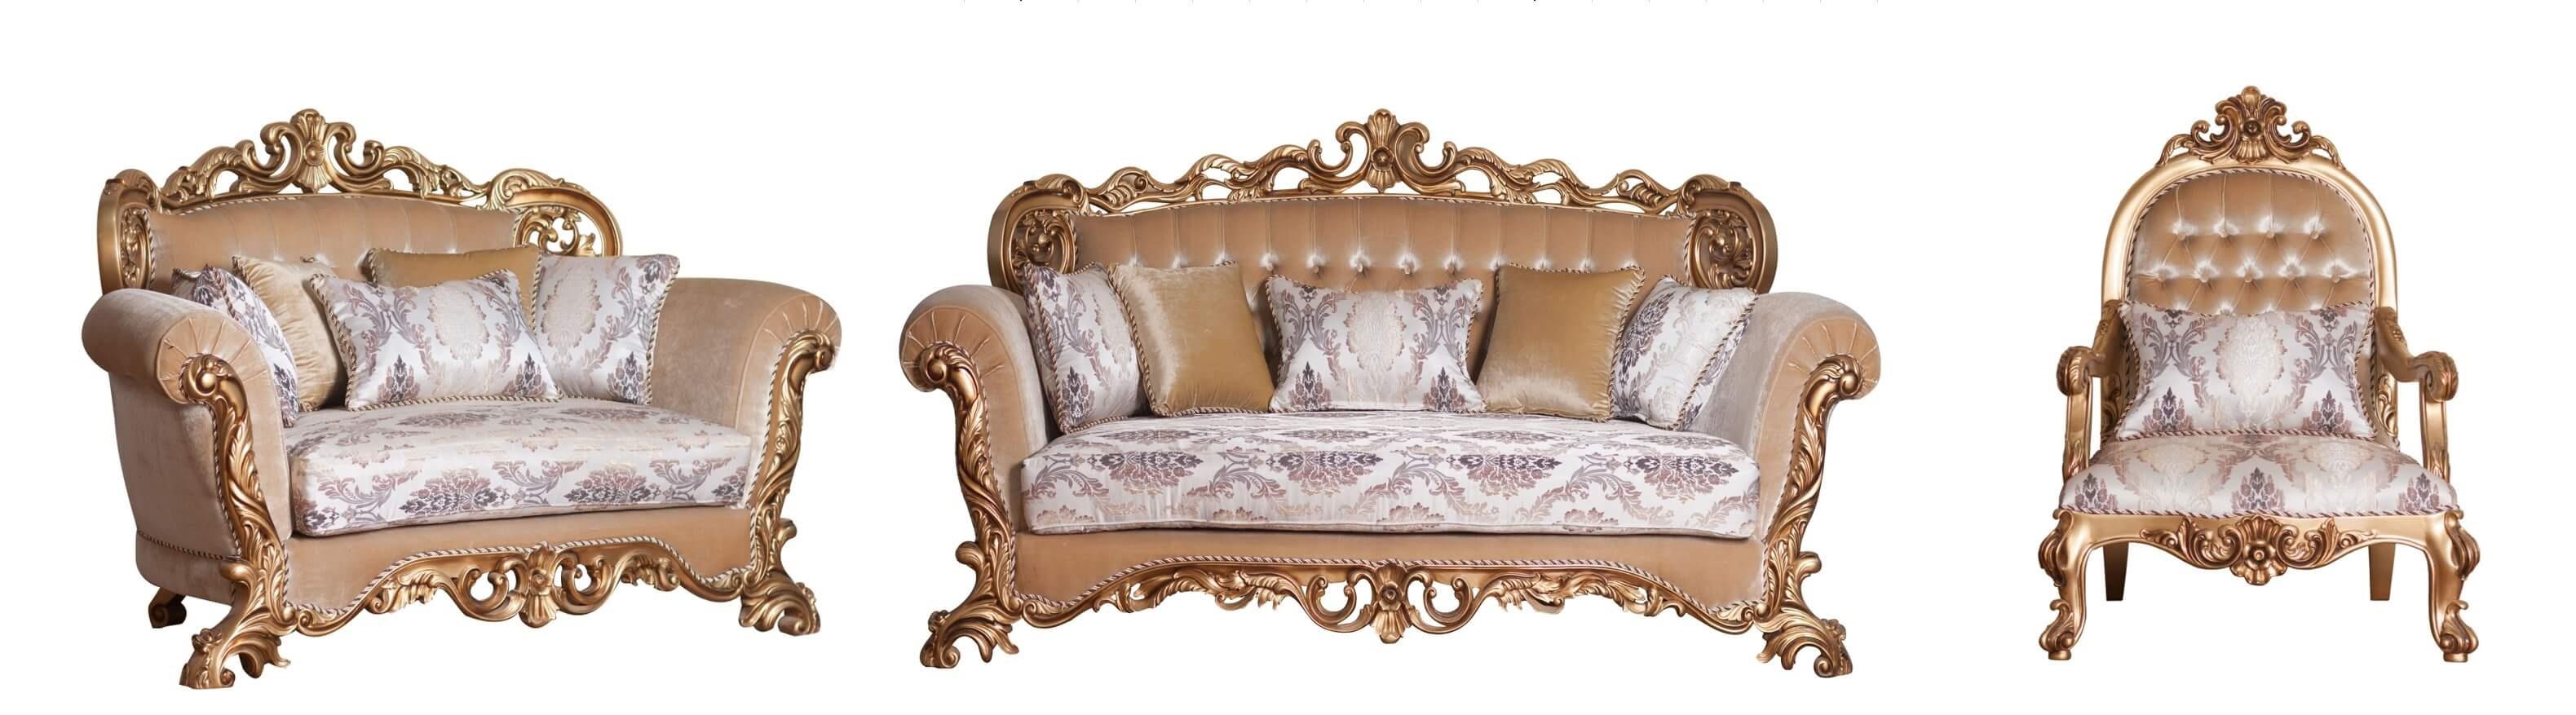 Classic, Traditional Sofa Set VENEZIA 34013-Set-3 in Antique, Bronze Fabric